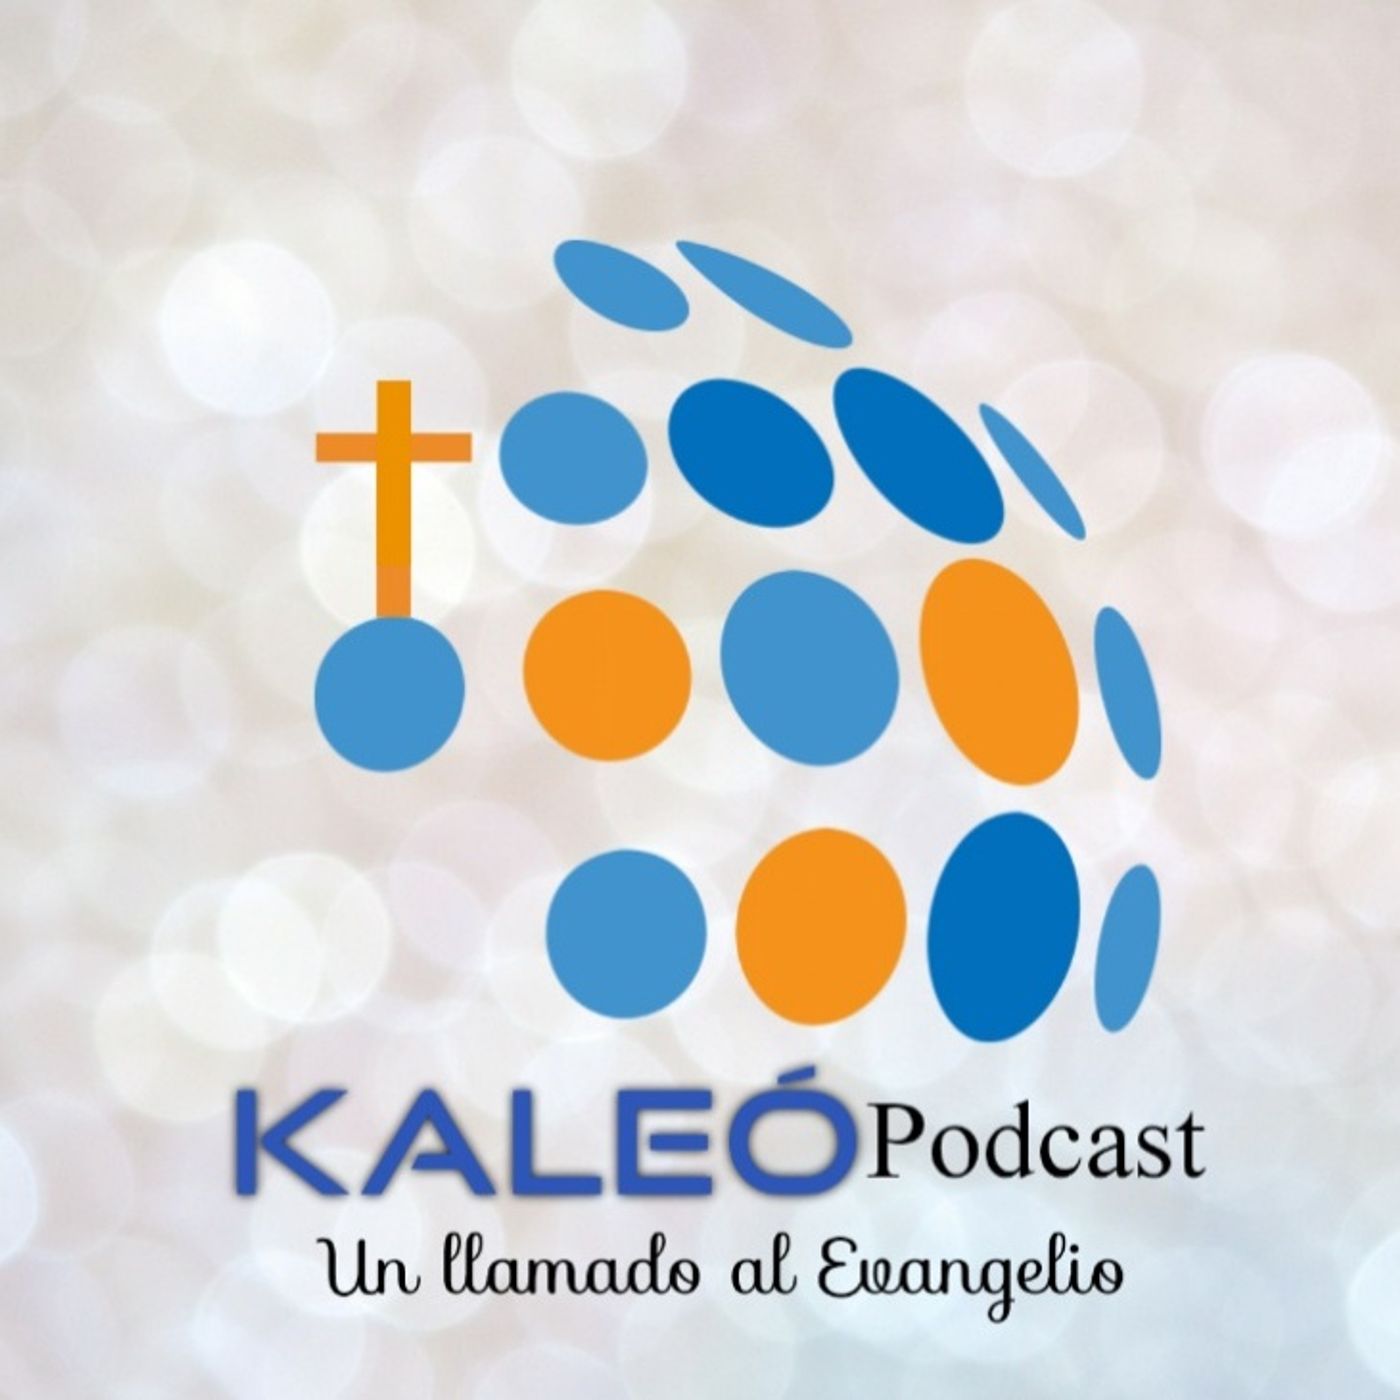 KALEO Podcast